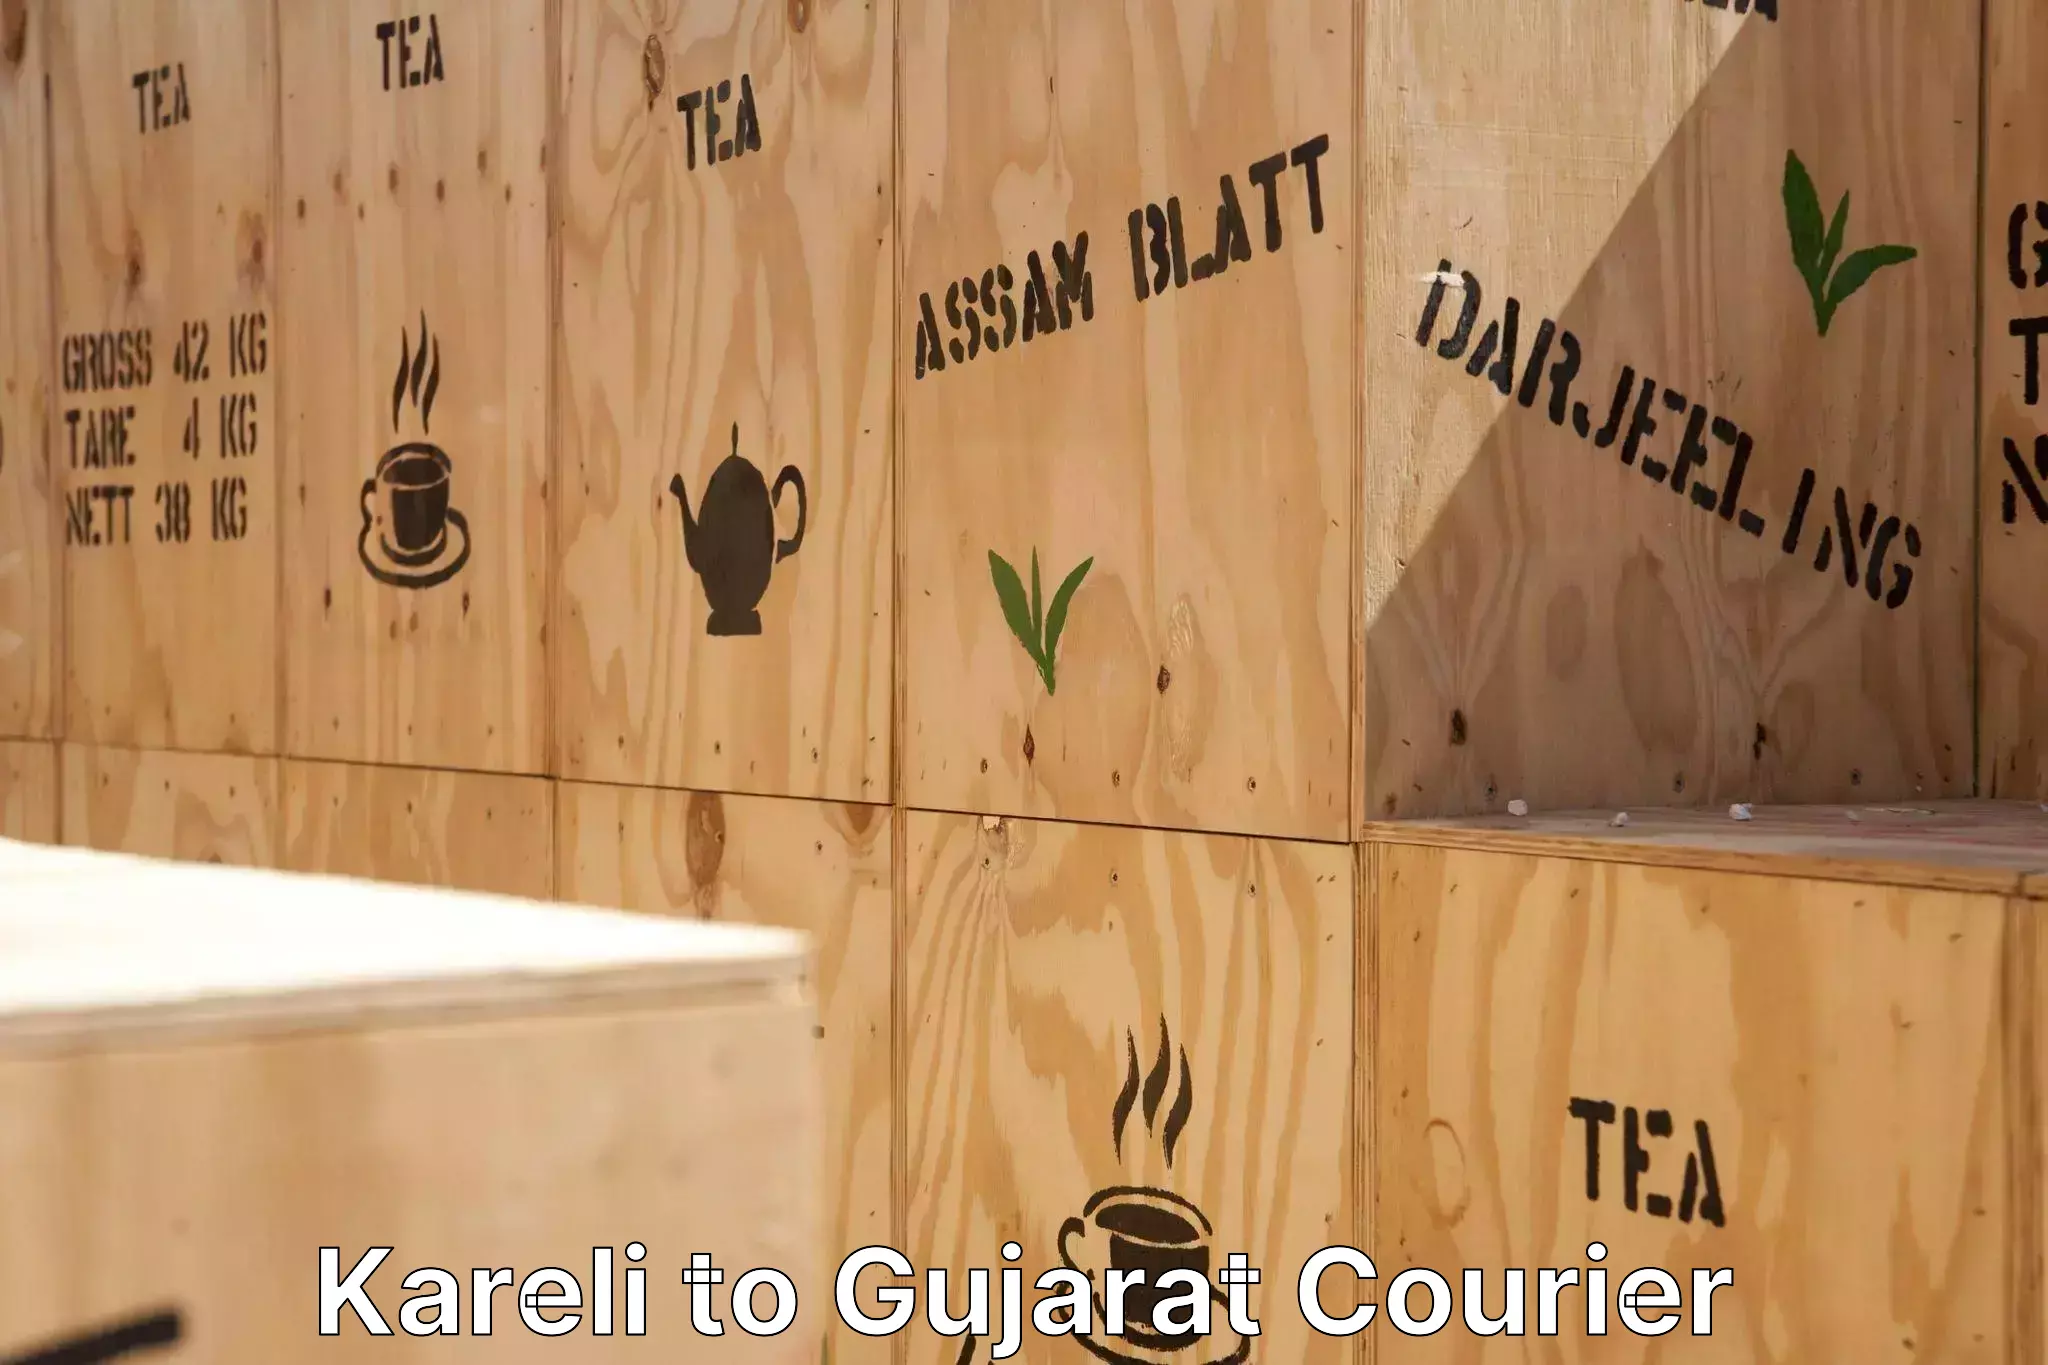 Furniture moving experts Kareli to Gujarat